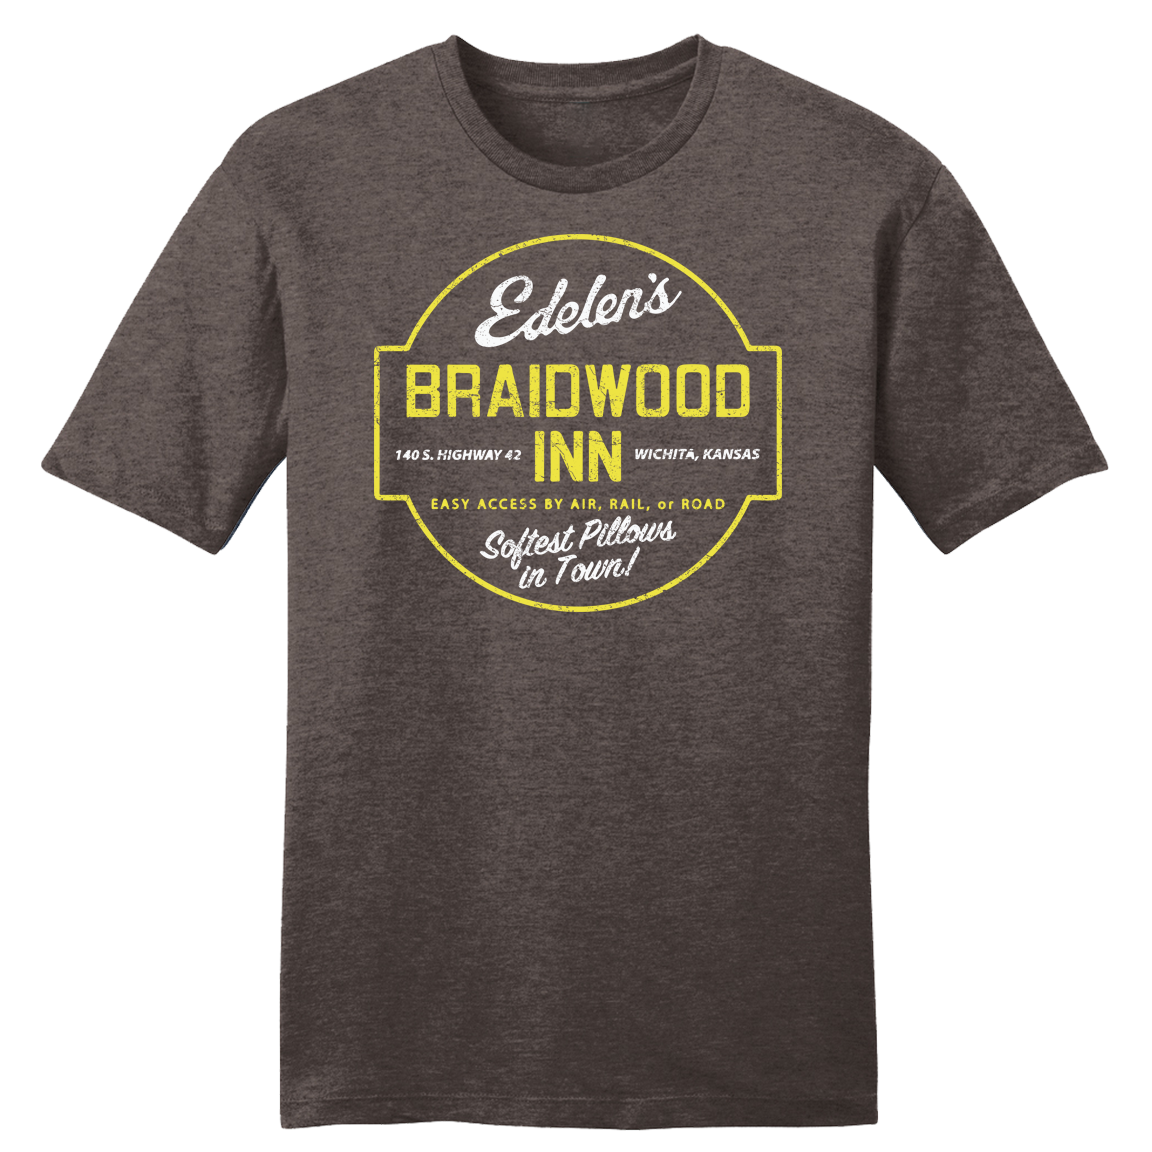 The Braidwood Inn T-shirt